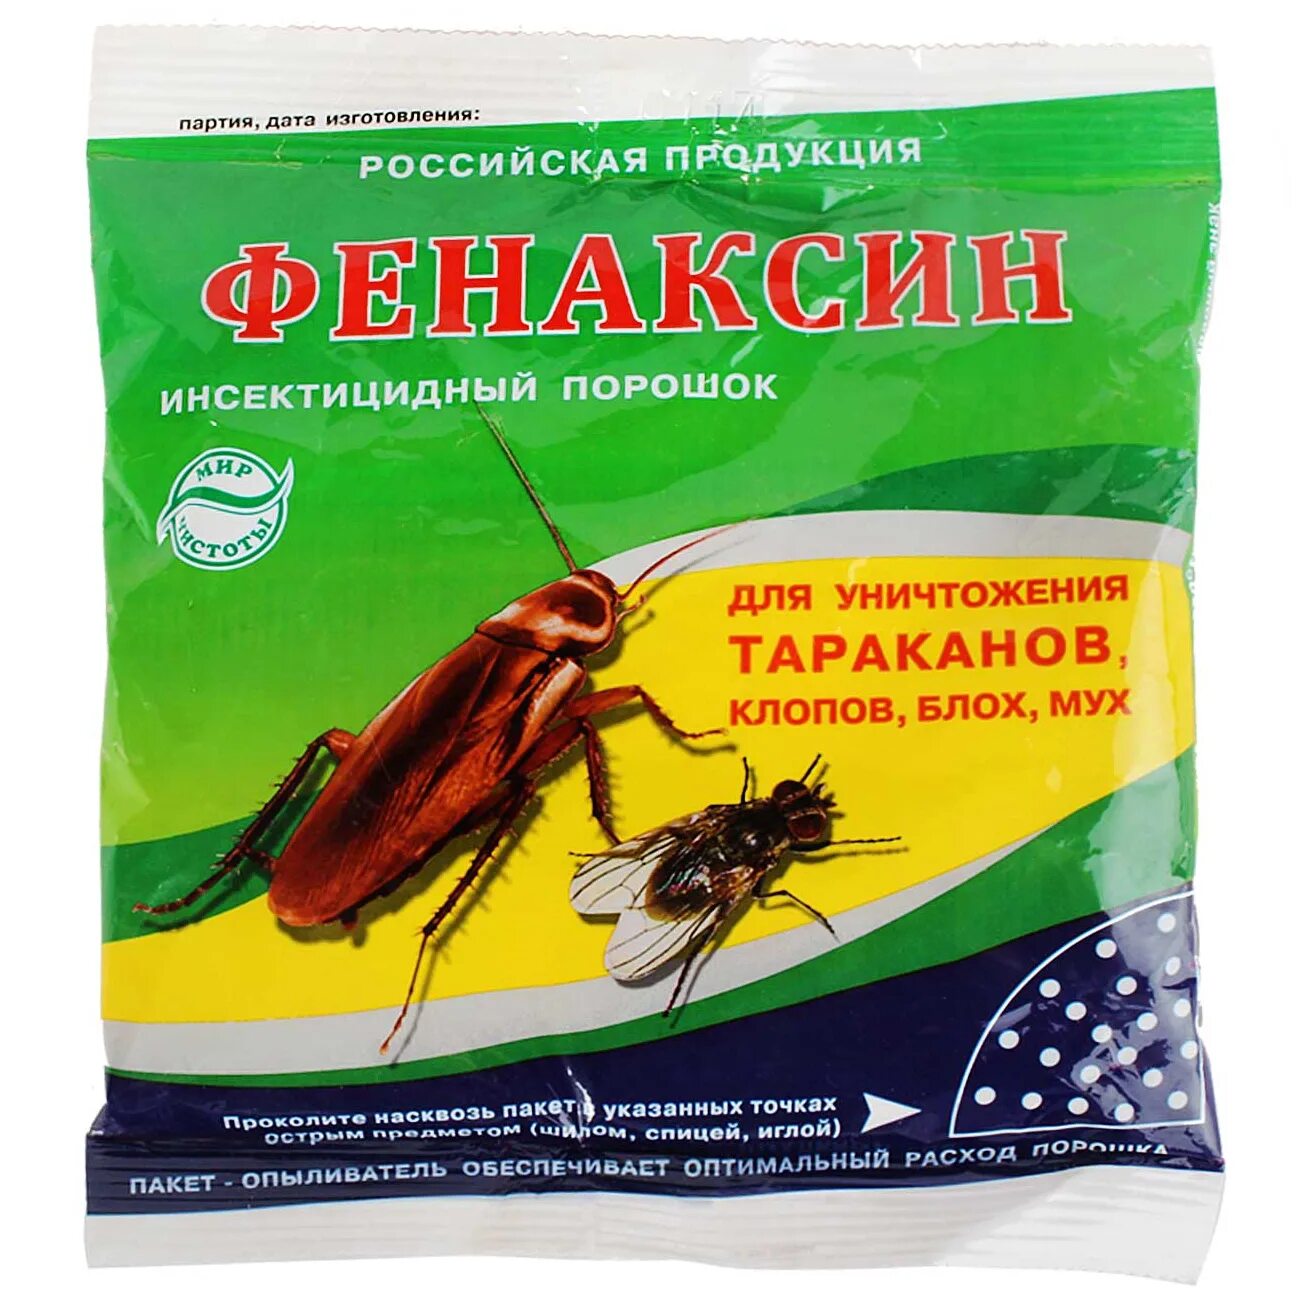 Фенаксин 125г от тараканов и муравьев. Порошок от тараканов, клопов, блох Фенаксин 125г (90). Средство от насекомых "Фенаксин", 125 г. Средство инсектицидное Фенаксин 125г.